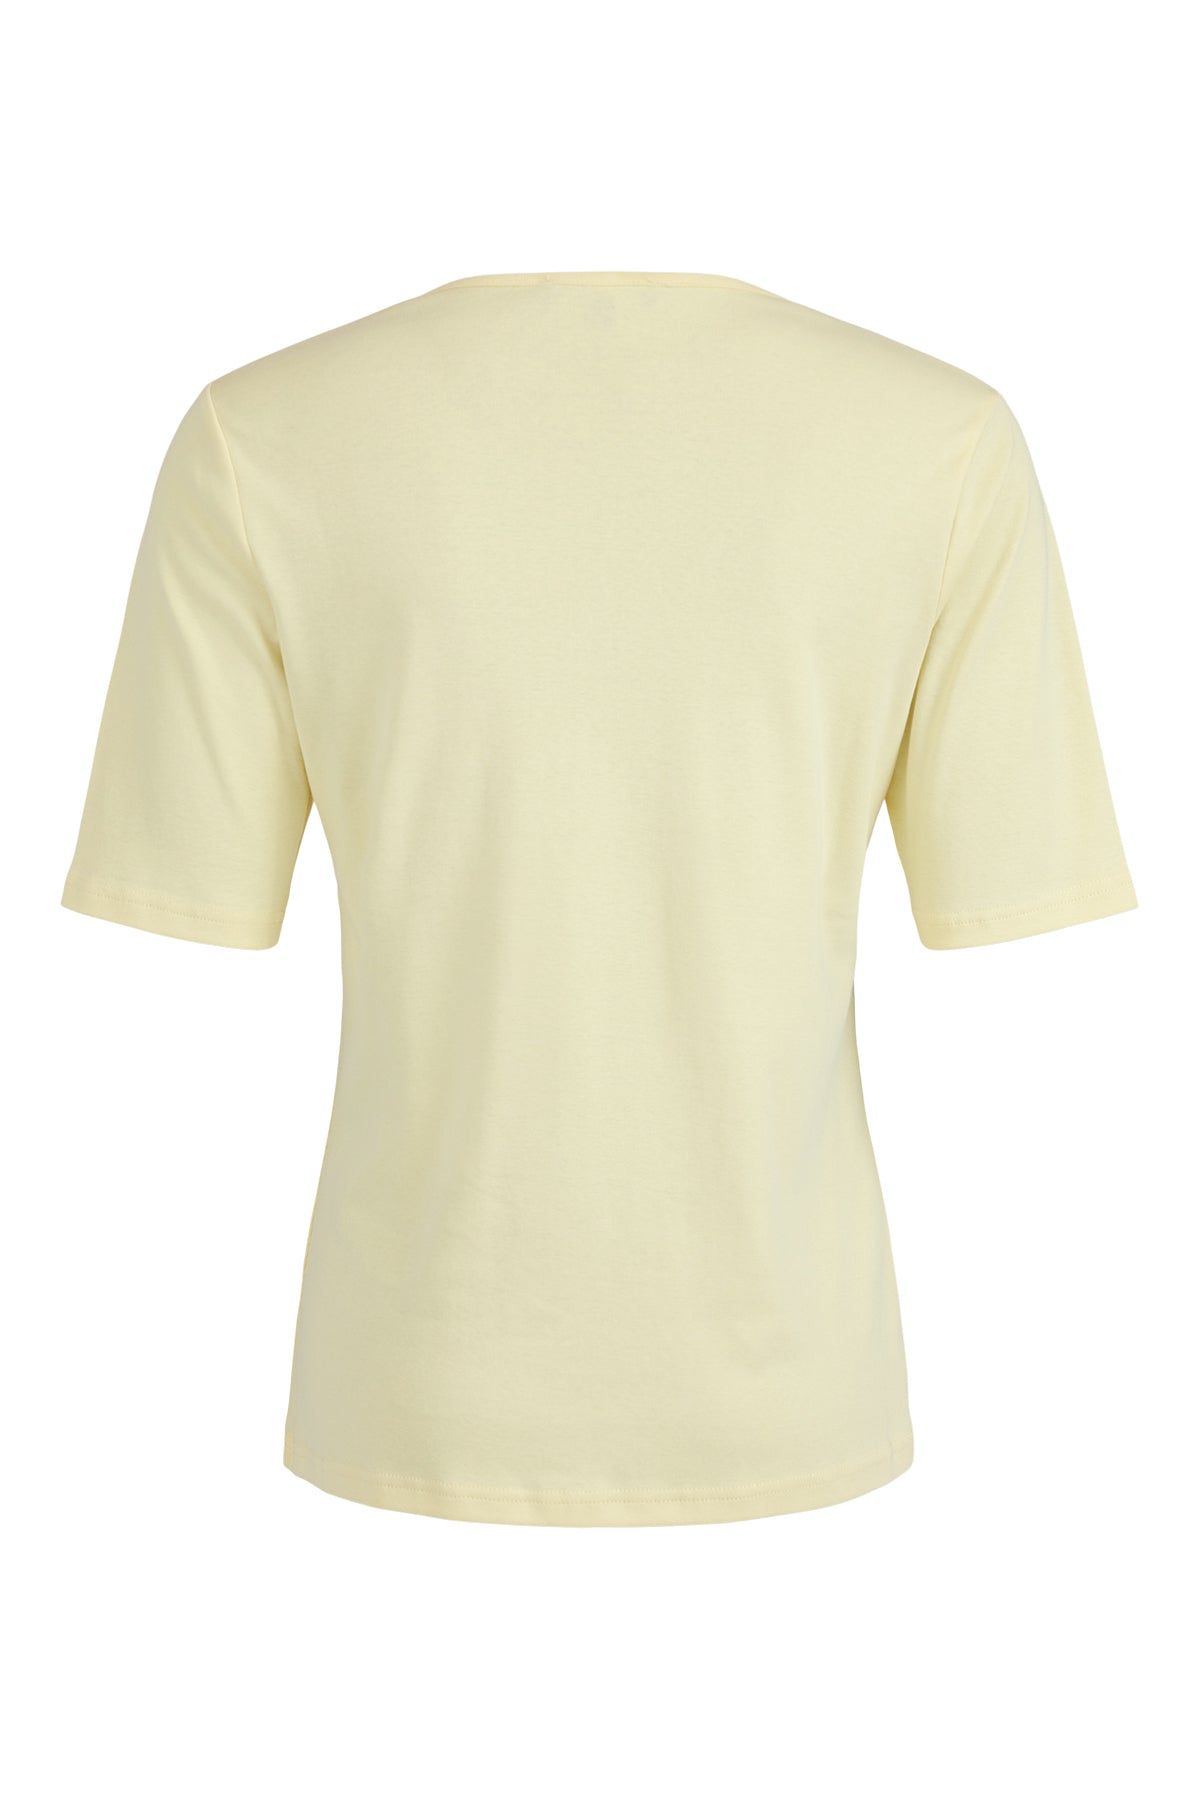 Sunday Lemon Luxury Cotton T-Shirt